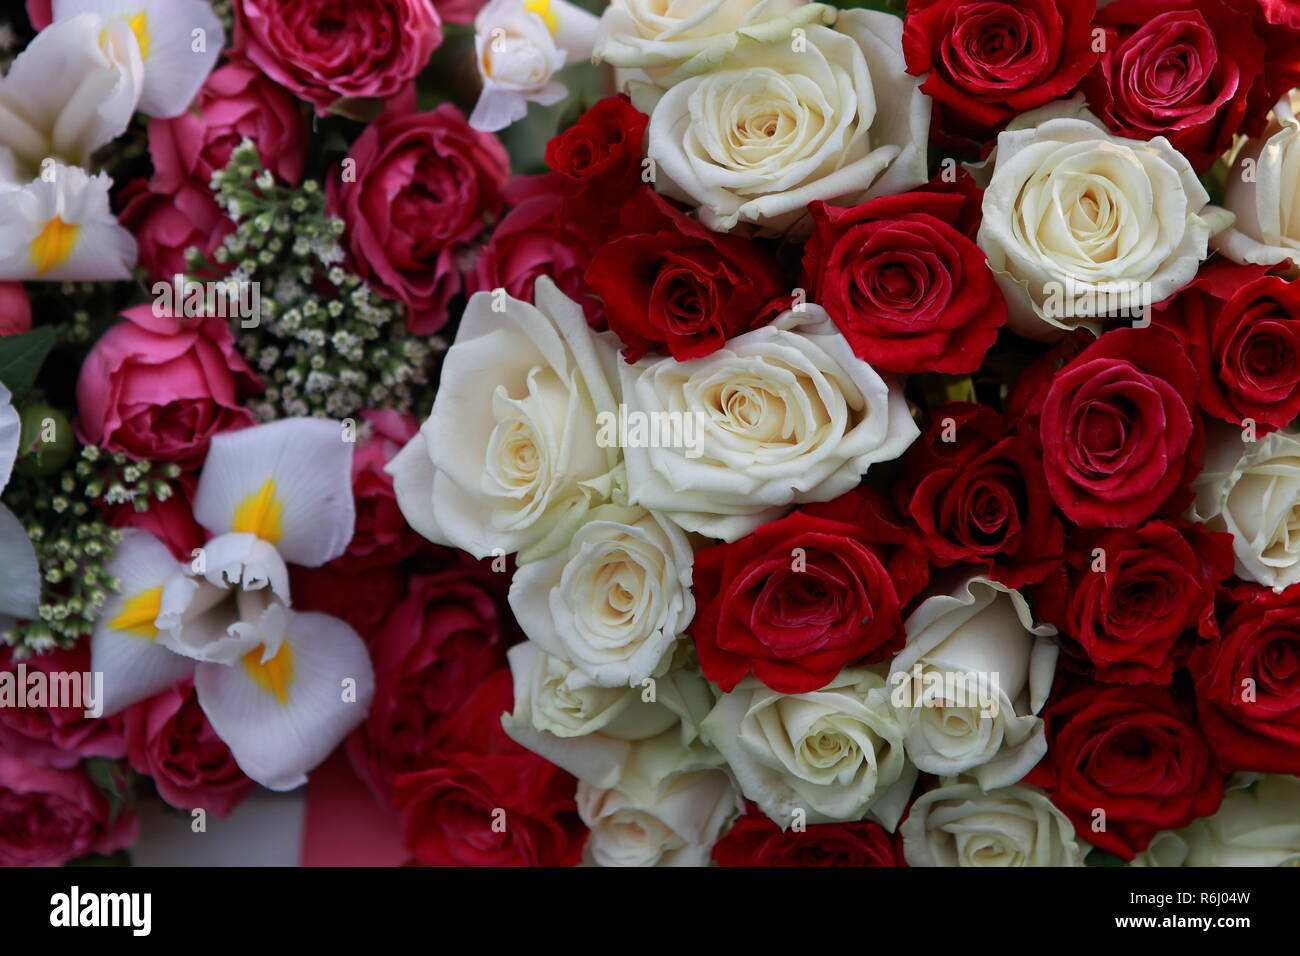 Riesige, wunderschöne Blumenstrauß aus den vielfarbigen Rosen und Blumen Stockfoto